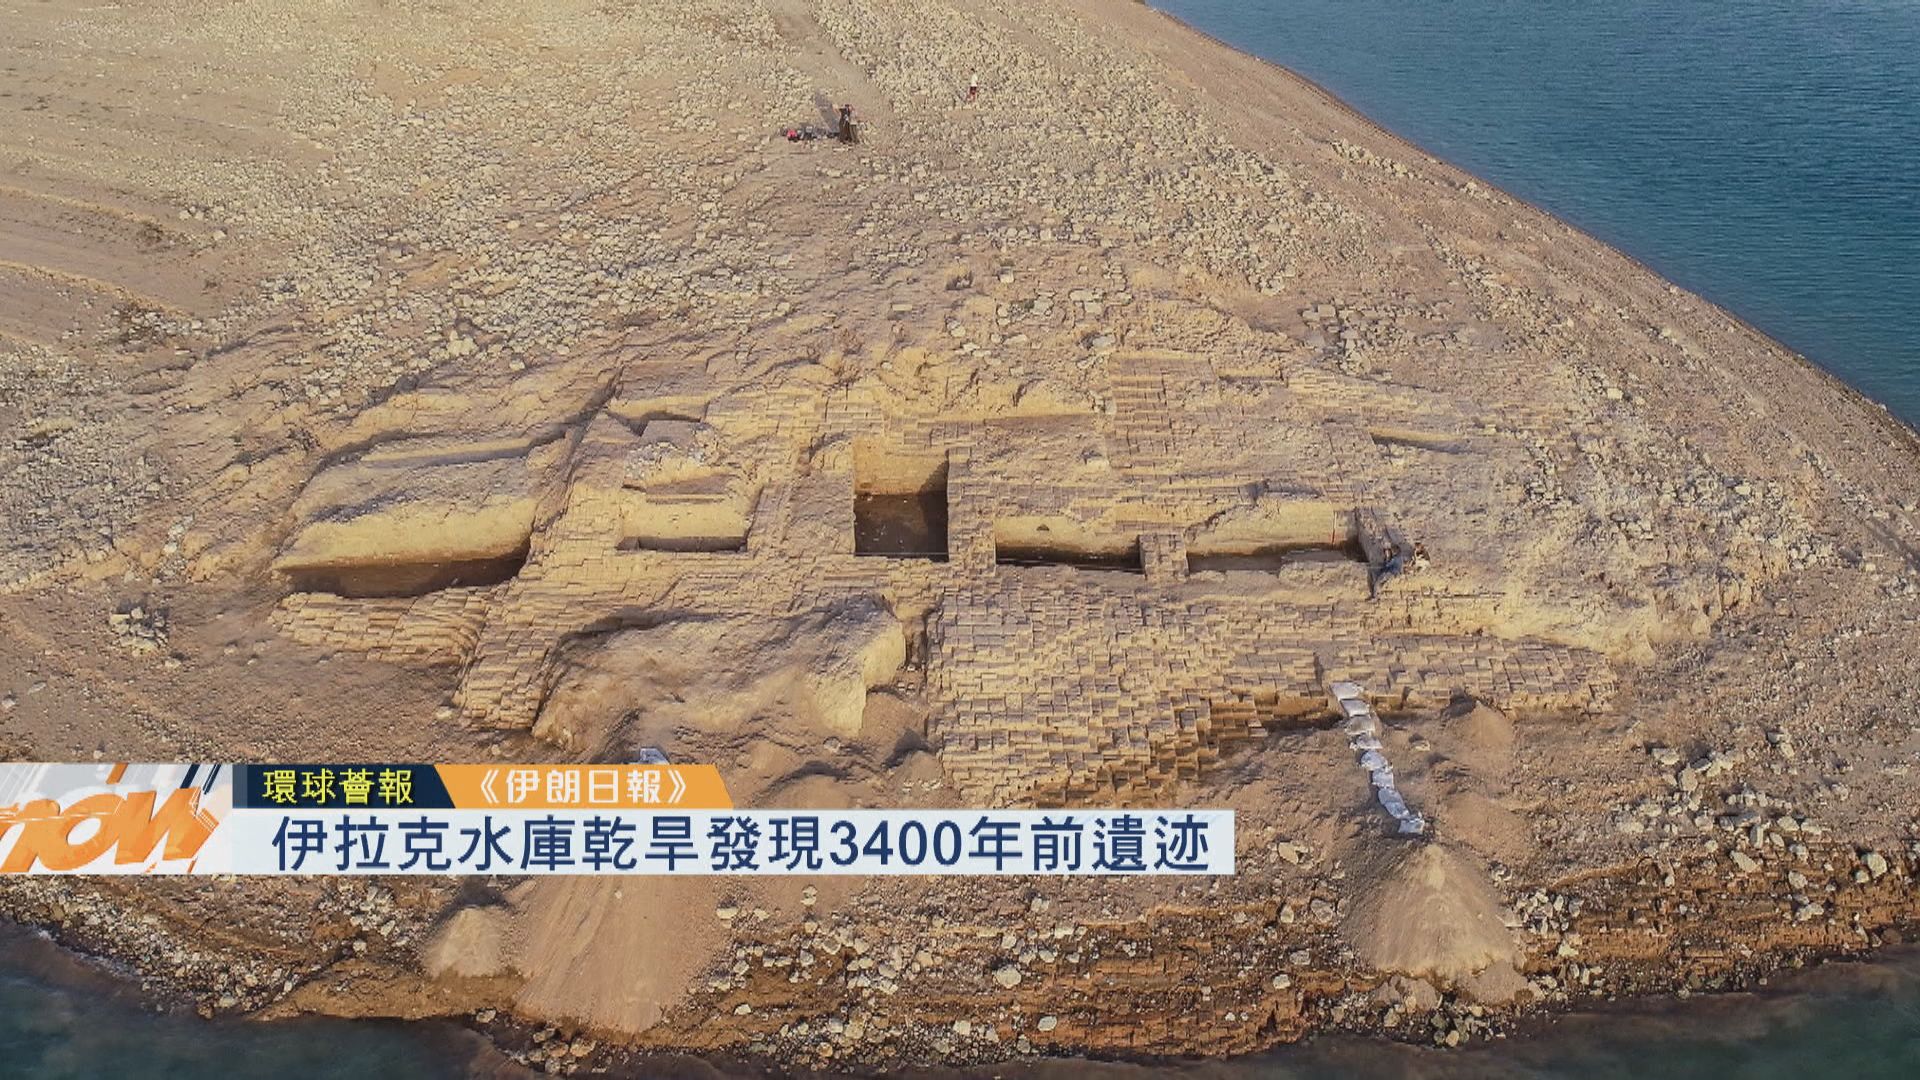 【環球薈報】伊拉克水庫乾旱發現3400年前遺迹